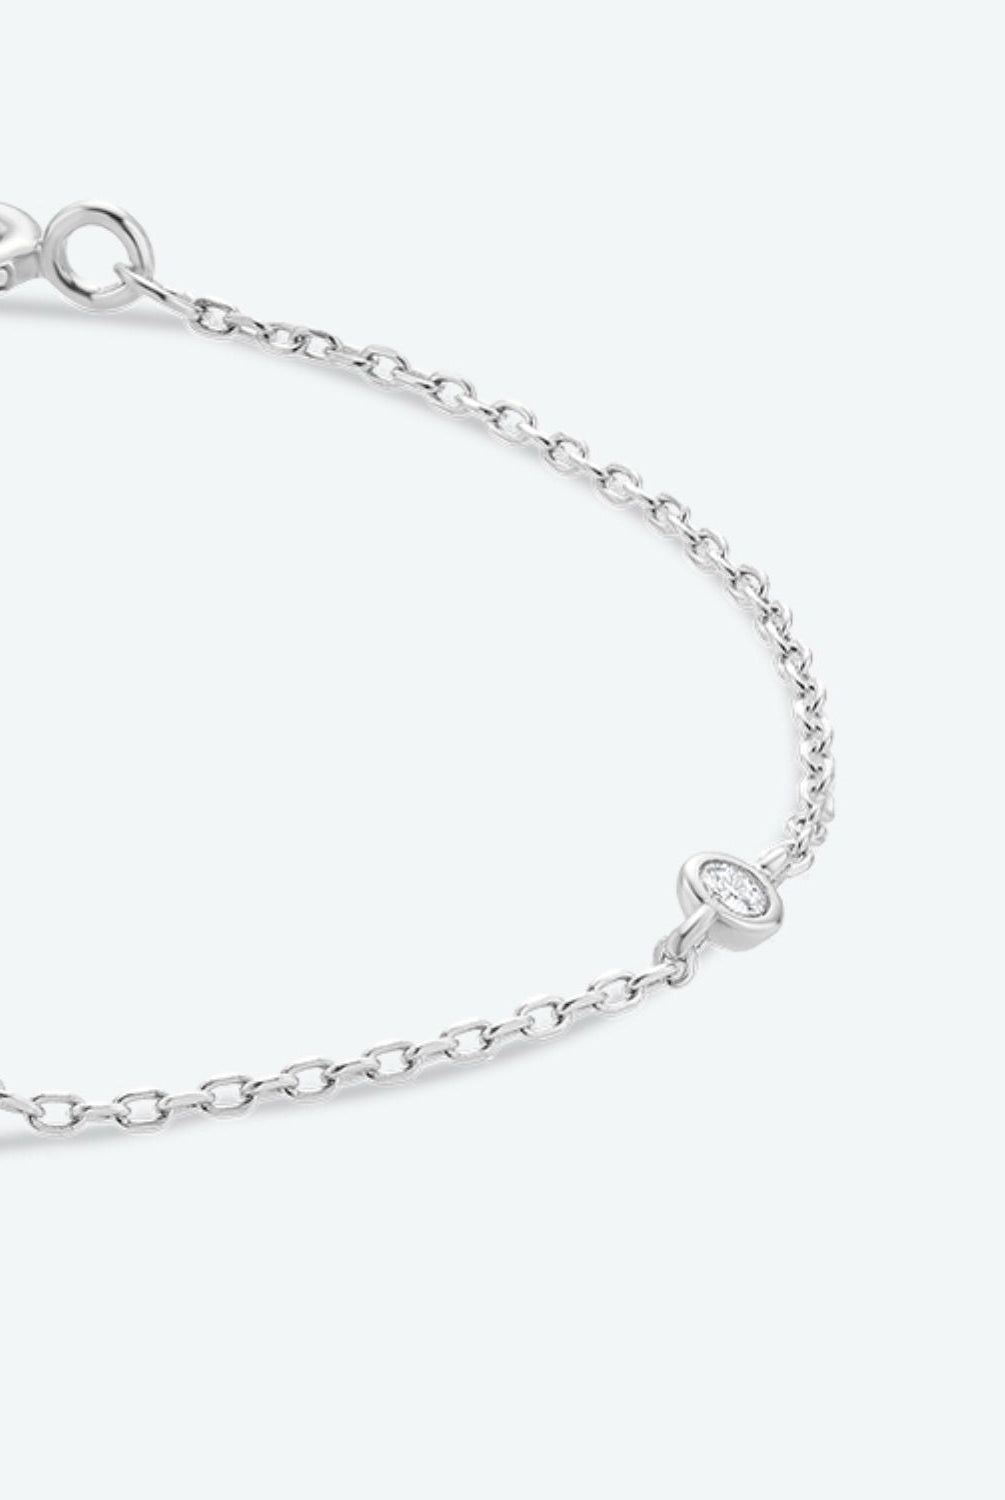 Q To U Zircon 925 Sterling Silver Bracelet - GemThreads Boutique